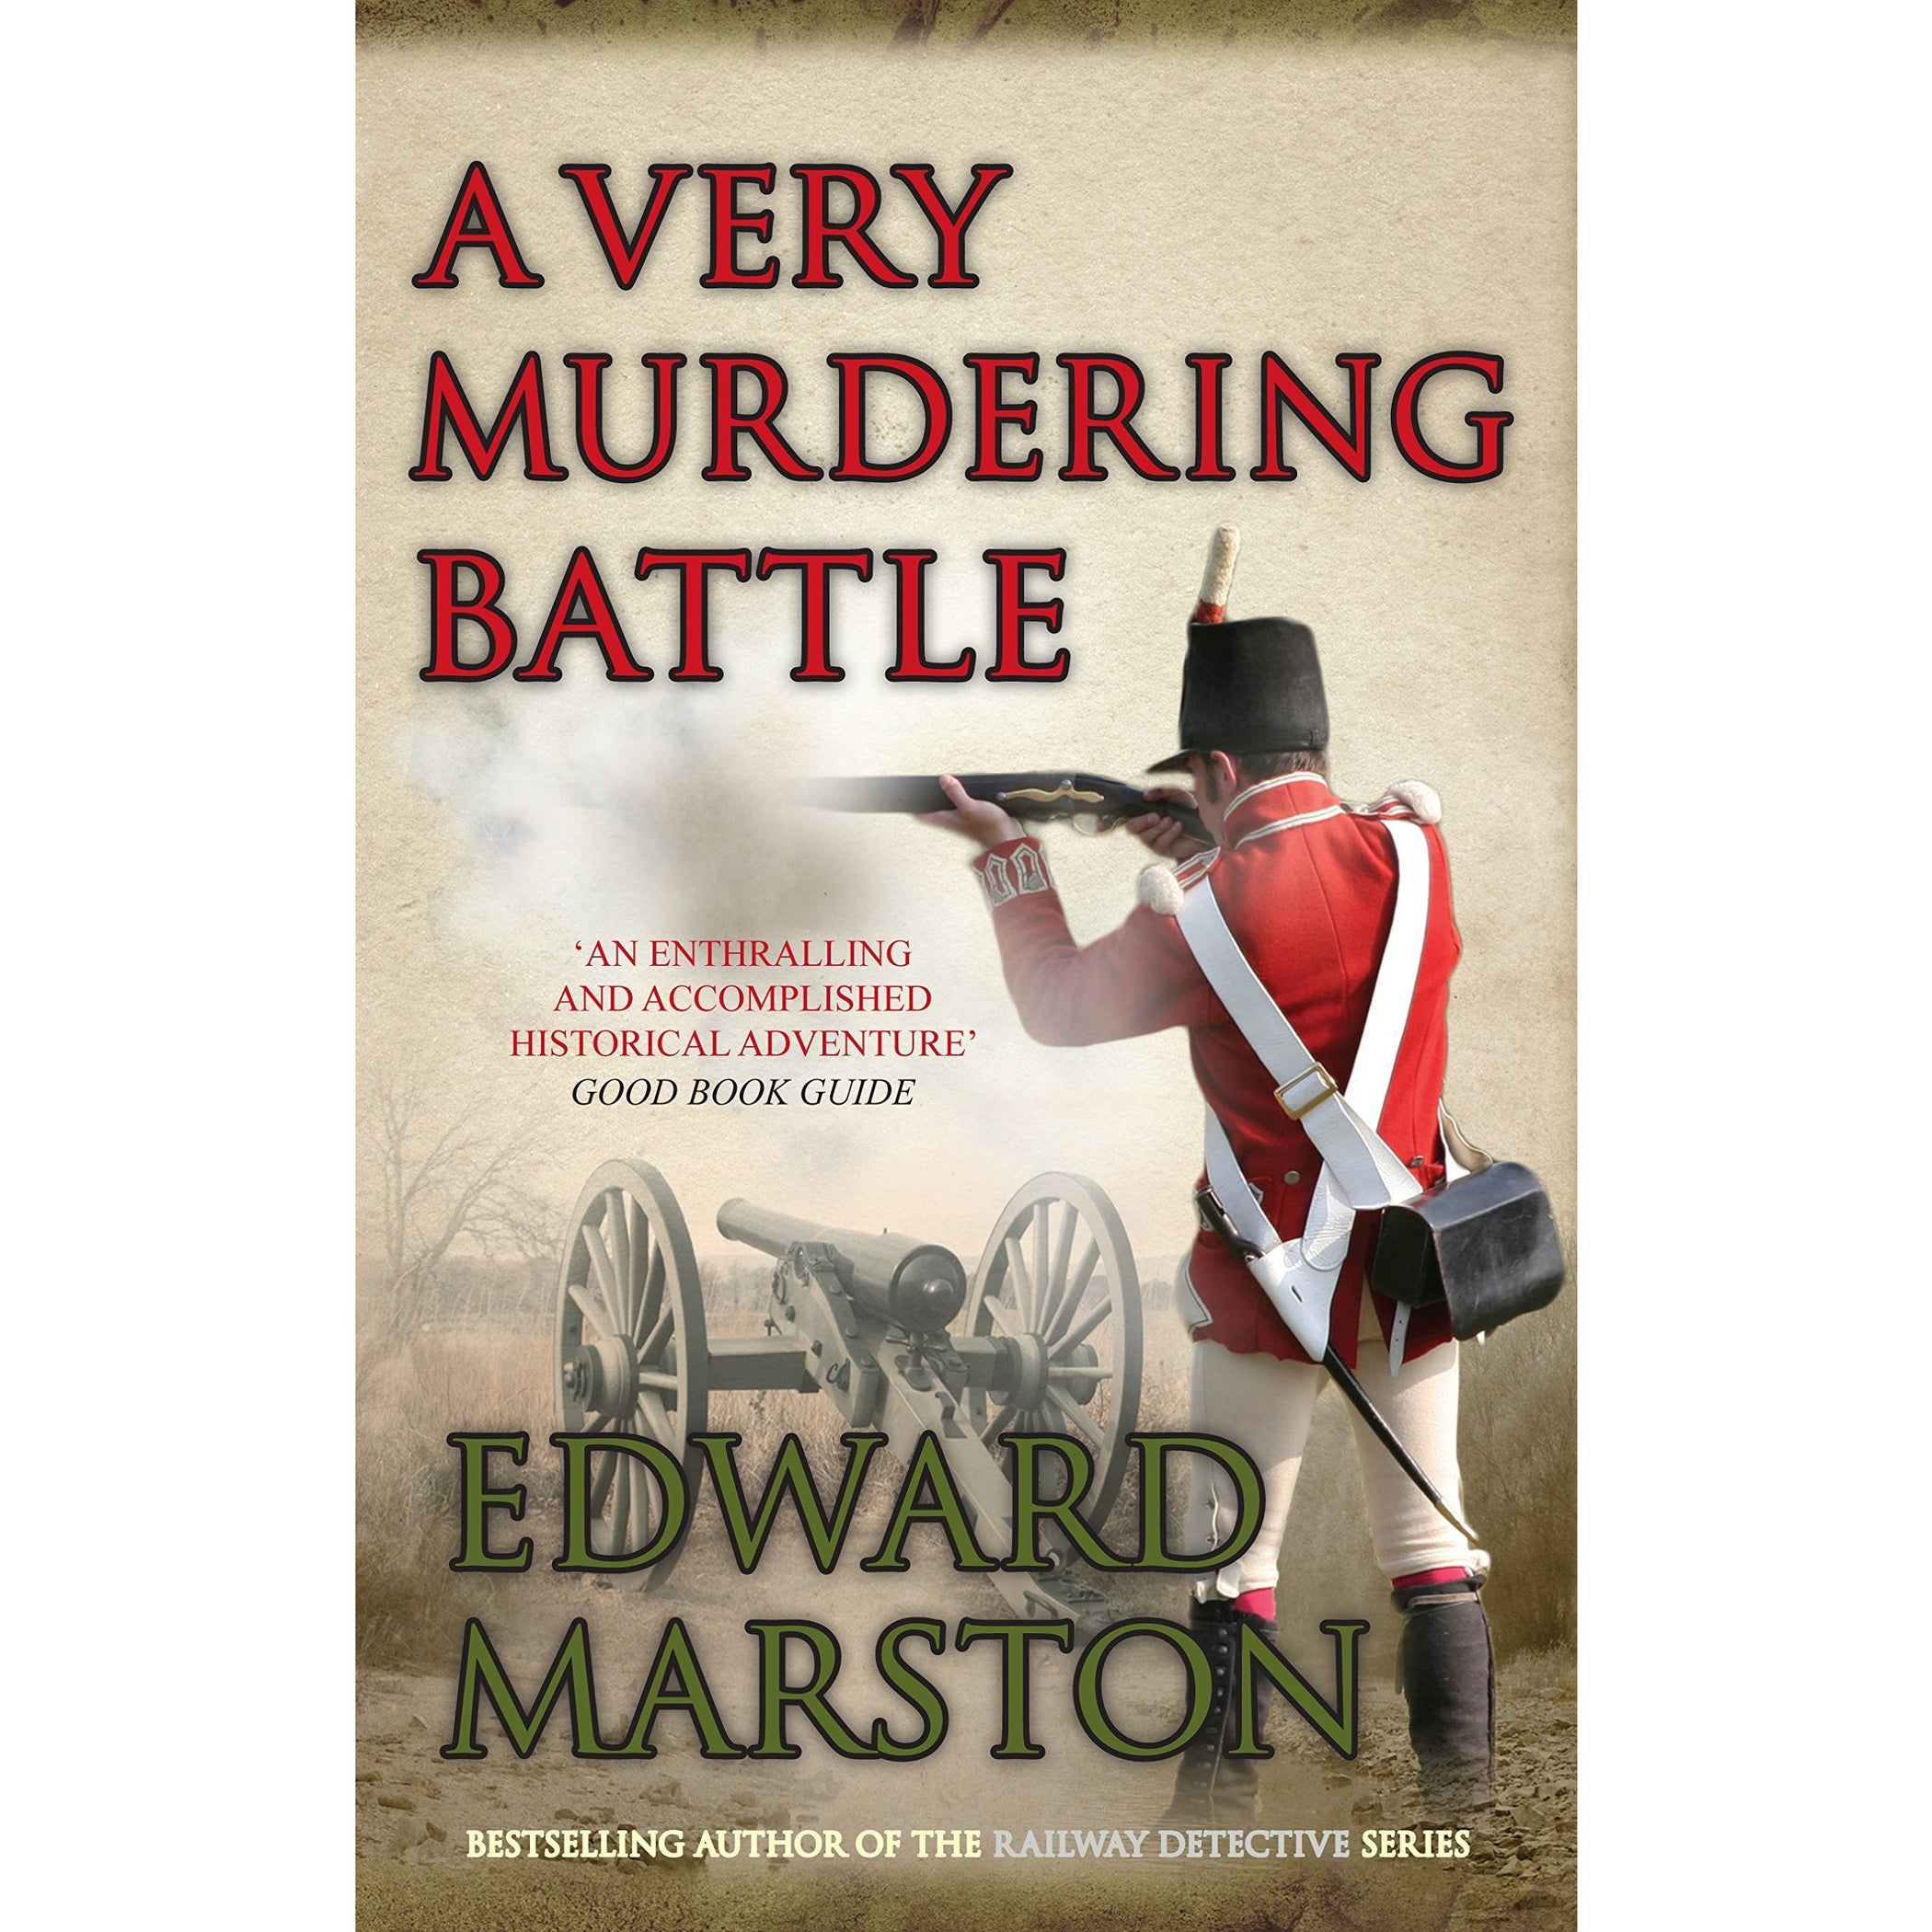 Edward marston captain rawson series 5 books collection set The Book